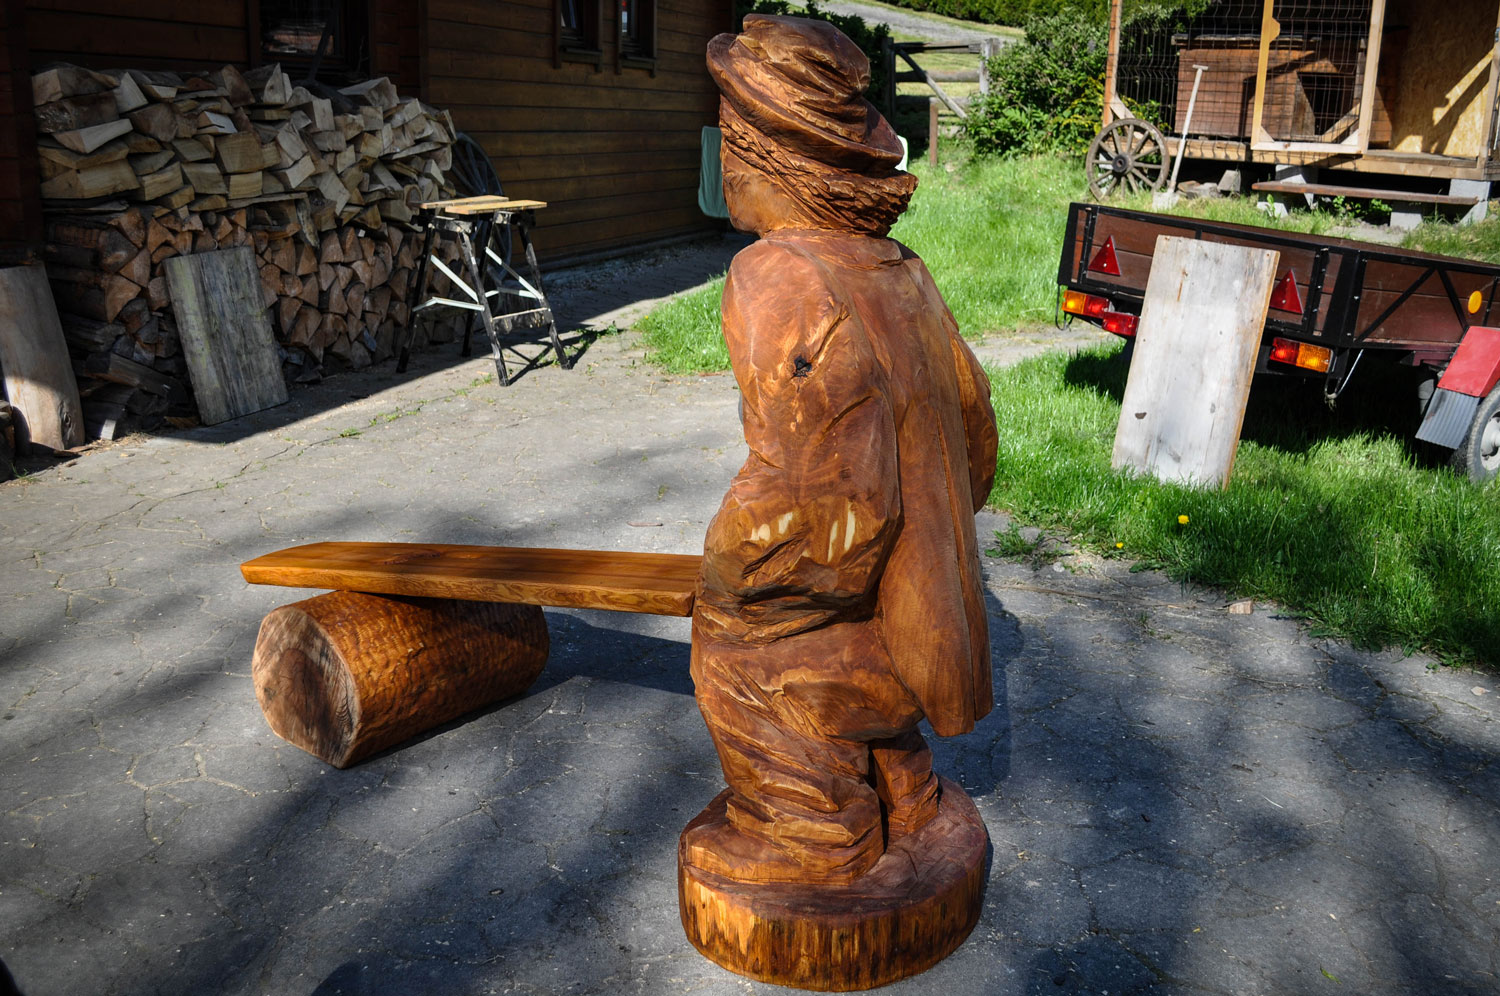 drevorezba-vyrezavani-carving-wood-drevo-socha-vceli-lavicka-klaun-radekzdrazil-20210531-08